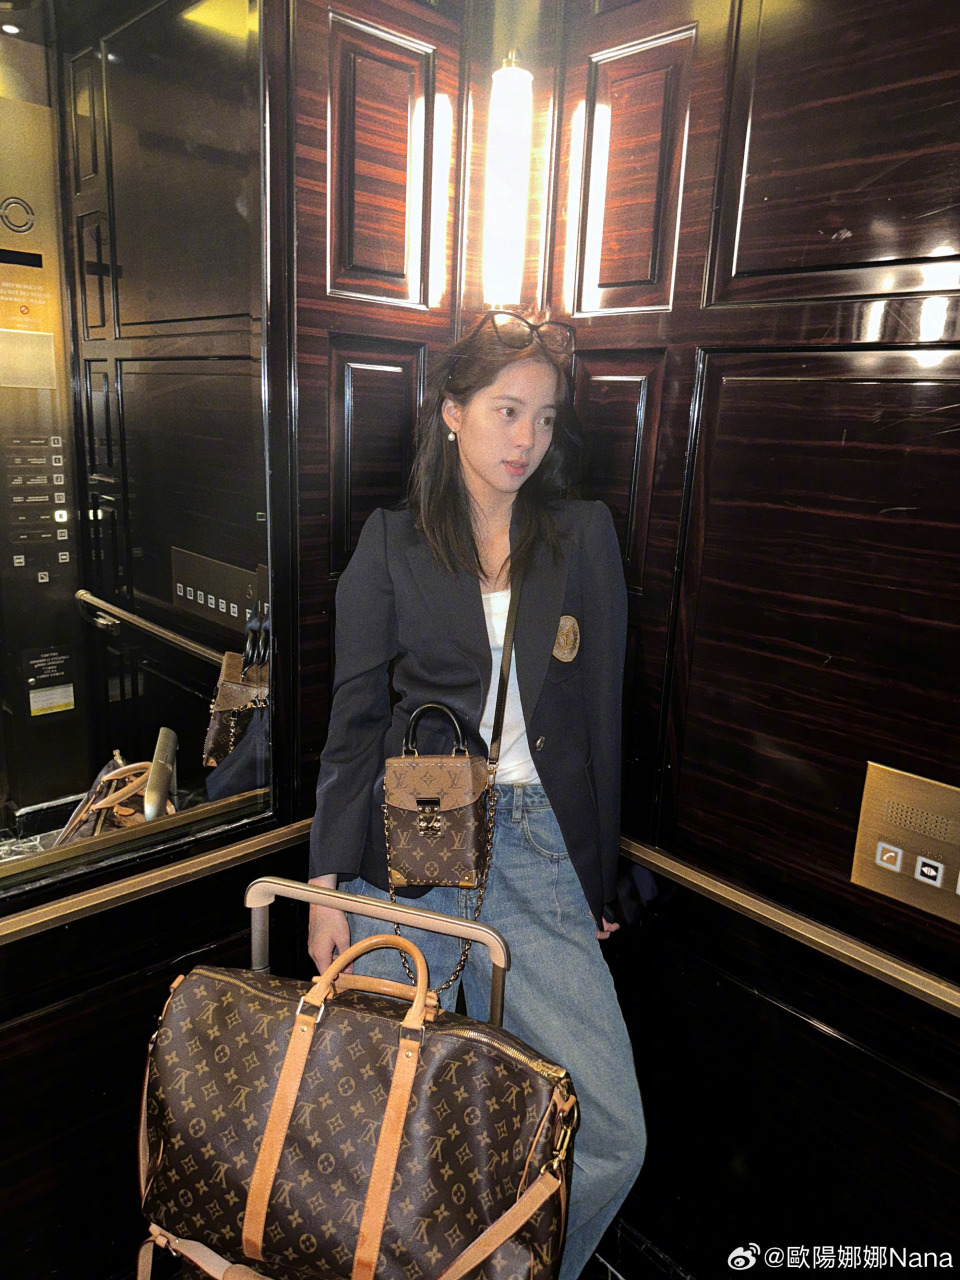 欧阳娜娜身上背的、随身的精品旅行包及行李箱都是知名精品品牌LV。